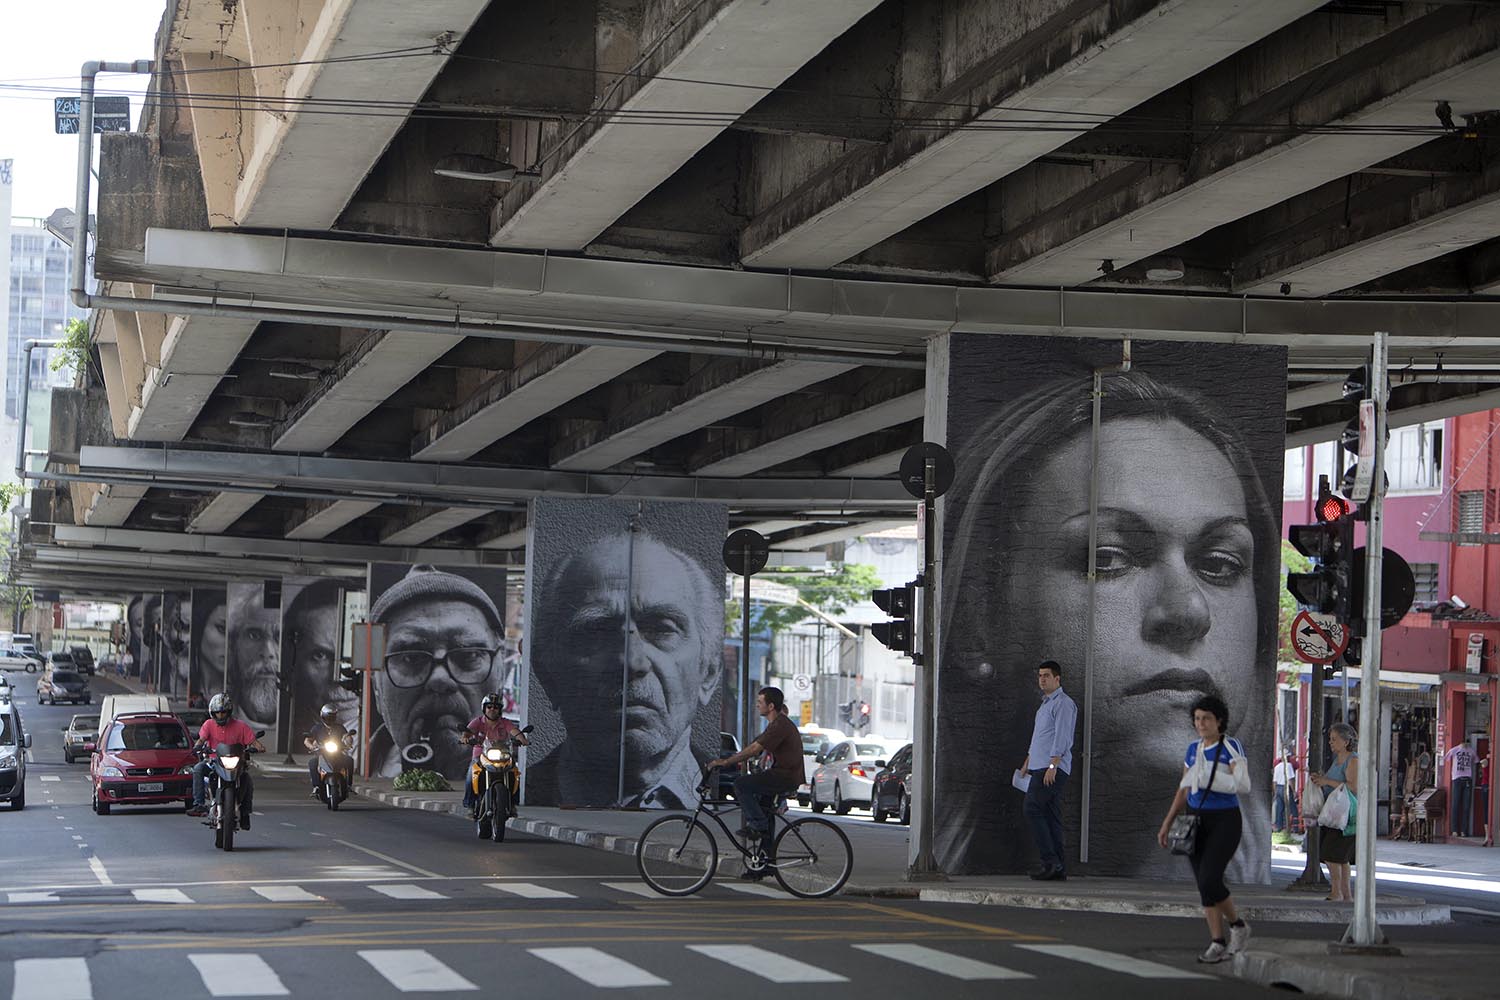 La artista Raquel Brust presenta el proyecto 'Giganto' en el viaducto São Paulo